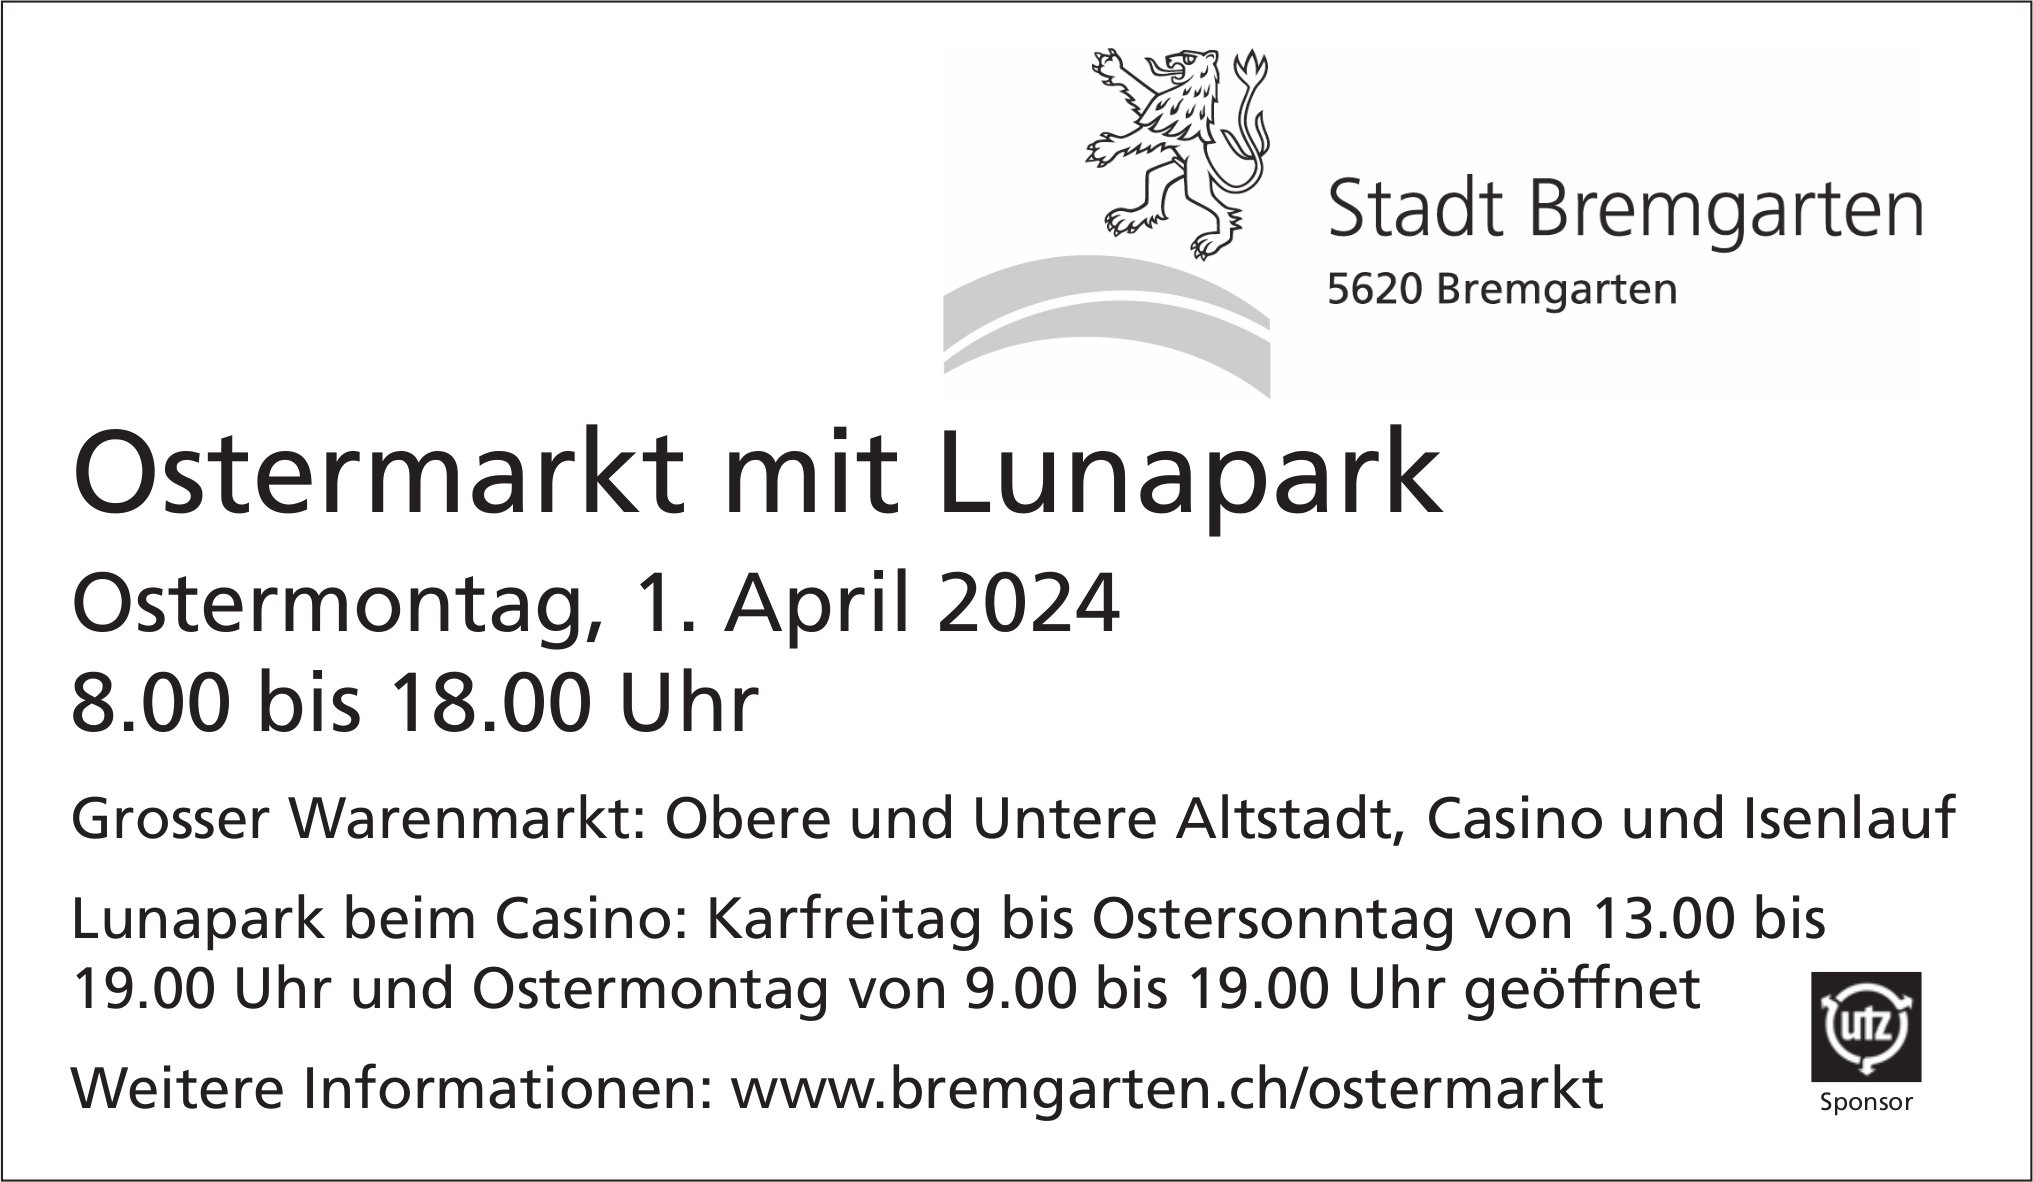 Ostermarkt mit Lunapark, 1. April, Obere und Untere Altstadt, Casino und Isenlauf, Bremgarten